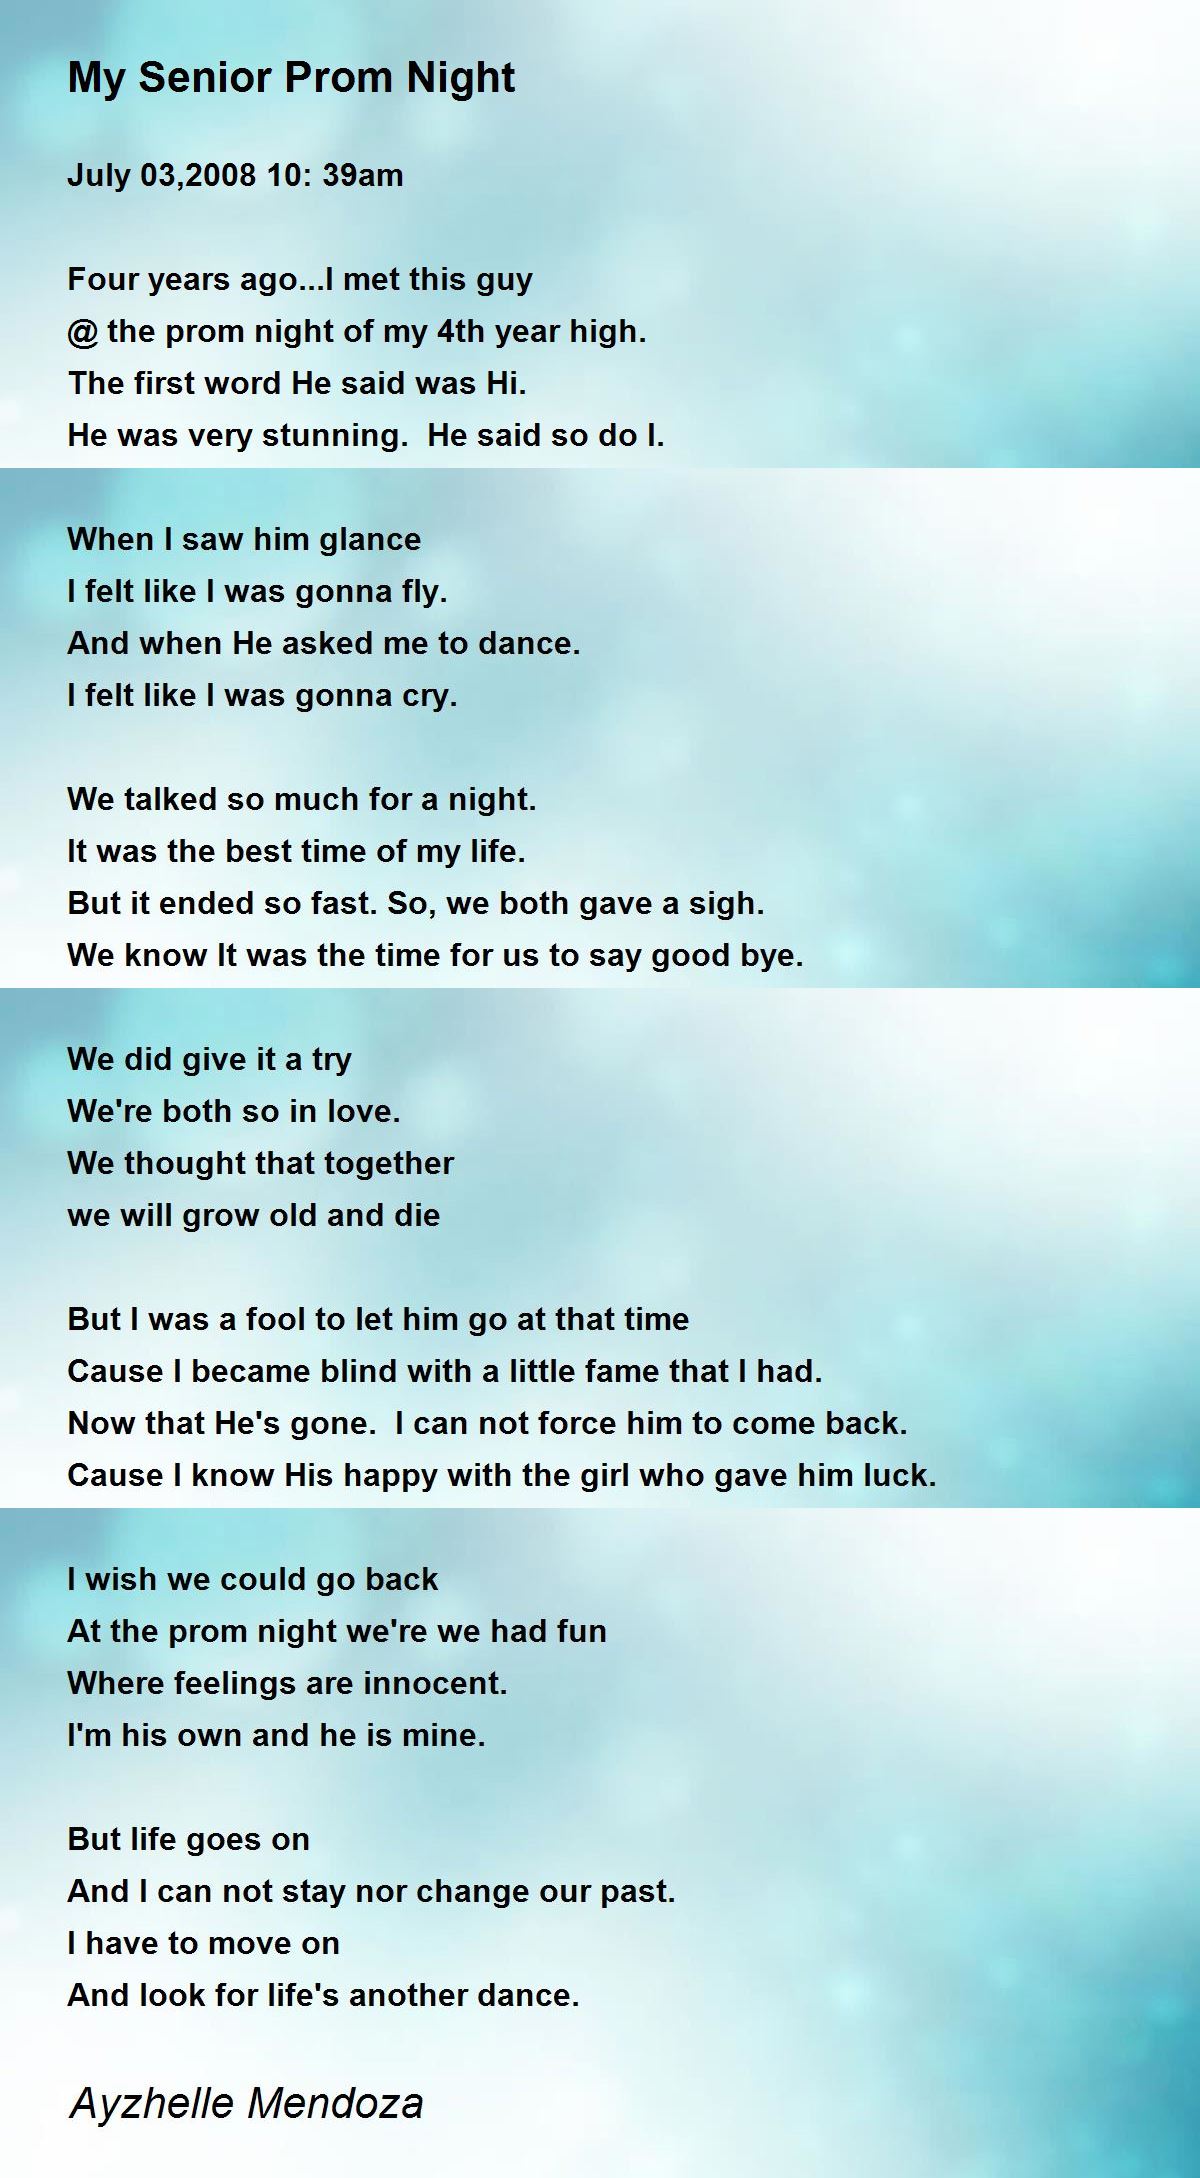 My Senior Prom Night Poem by Ayzhelle Mendoza - Poem Hunter